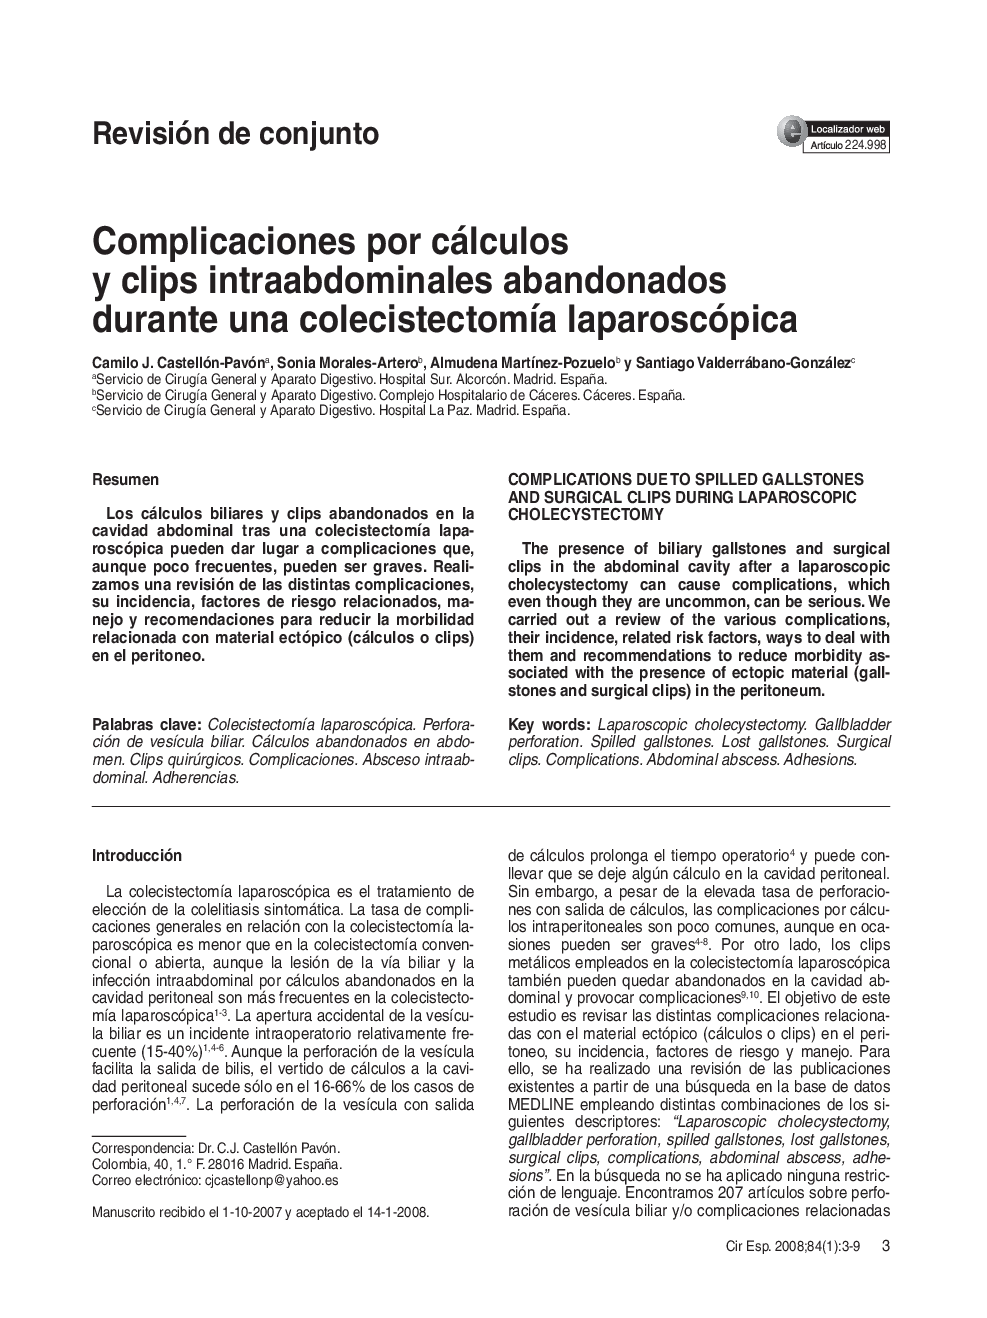 Complicaciones por cálculos y clips intraabdominales abandonados durante una colecistectomÃ­a laparoscópica